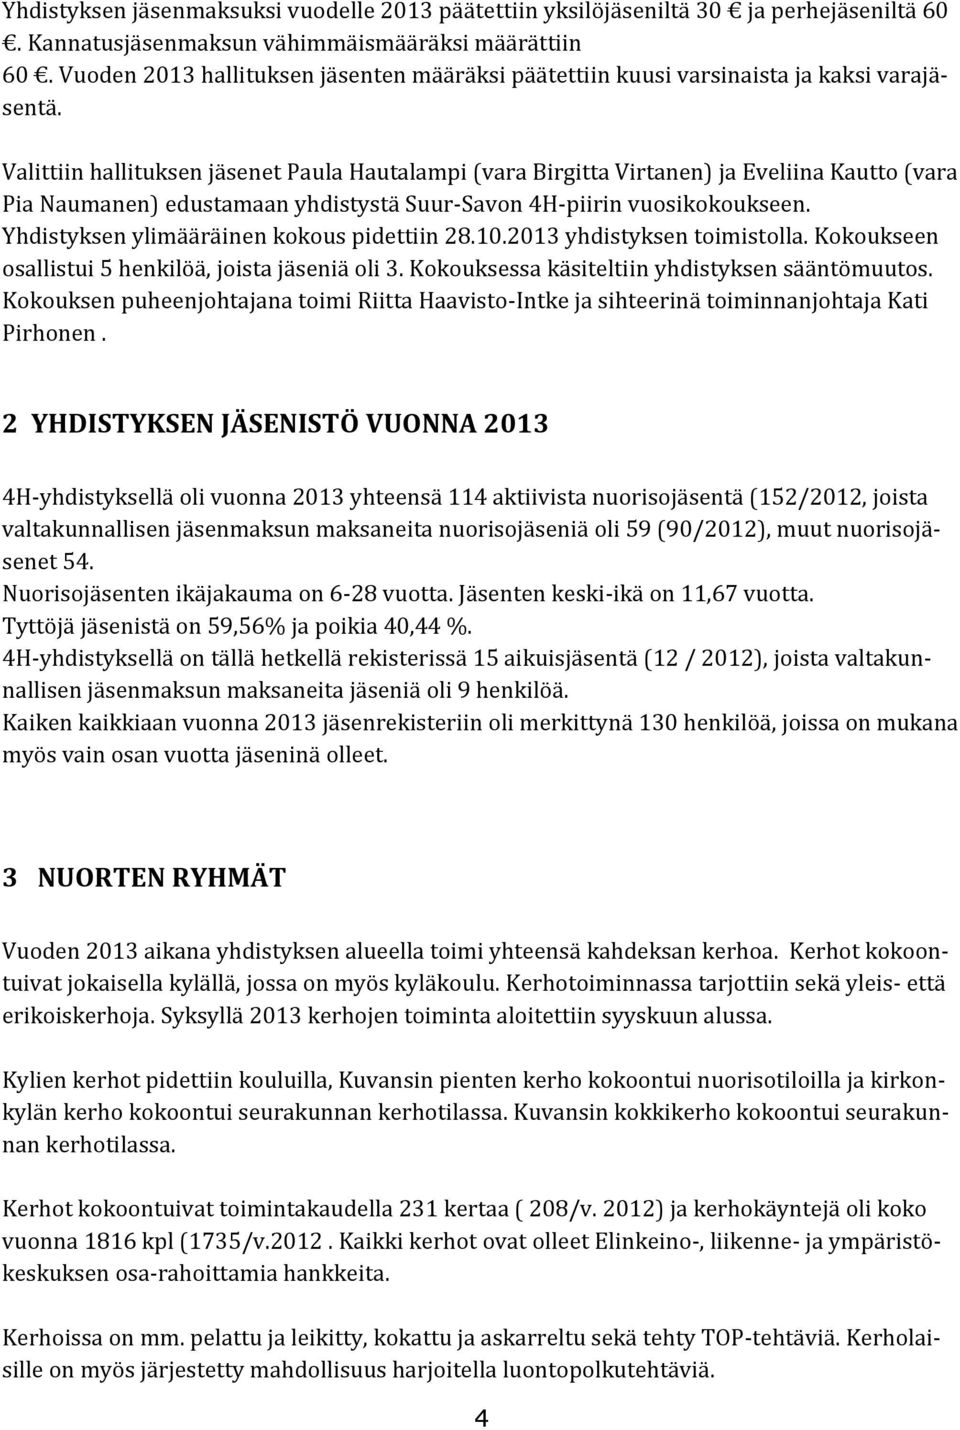 Valittiin hallituksen jäsenet Paula Hautalampi (vara Birgitta Virtanen) ja Eveliina Kautto (vara Pia Naumanen) edustamaan yhdistystä Suur-Savon 4H-piirin vuosikokoukseen.